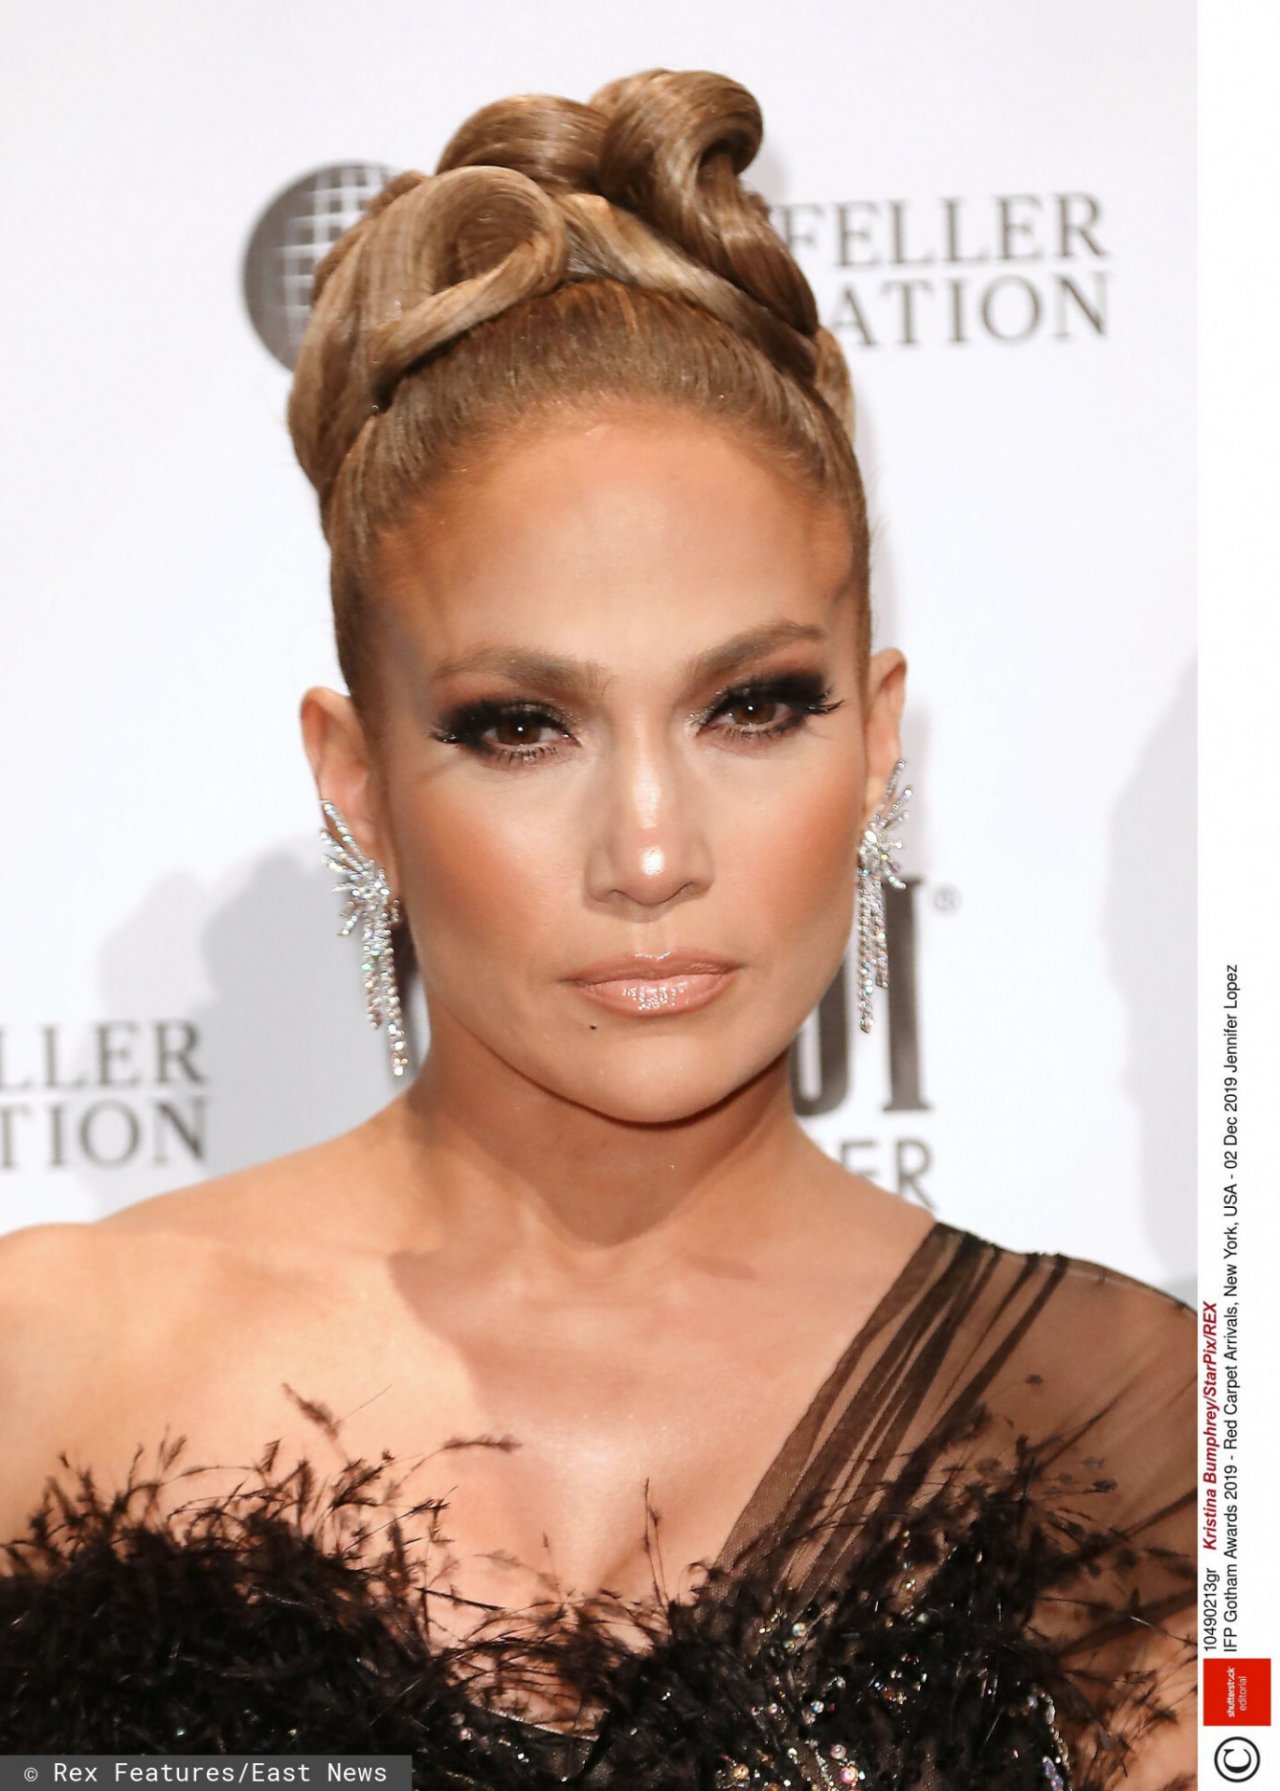 Włosy J.Lo to doczepy! Pokazała, jak wyglądają naprawdę jej włosy!